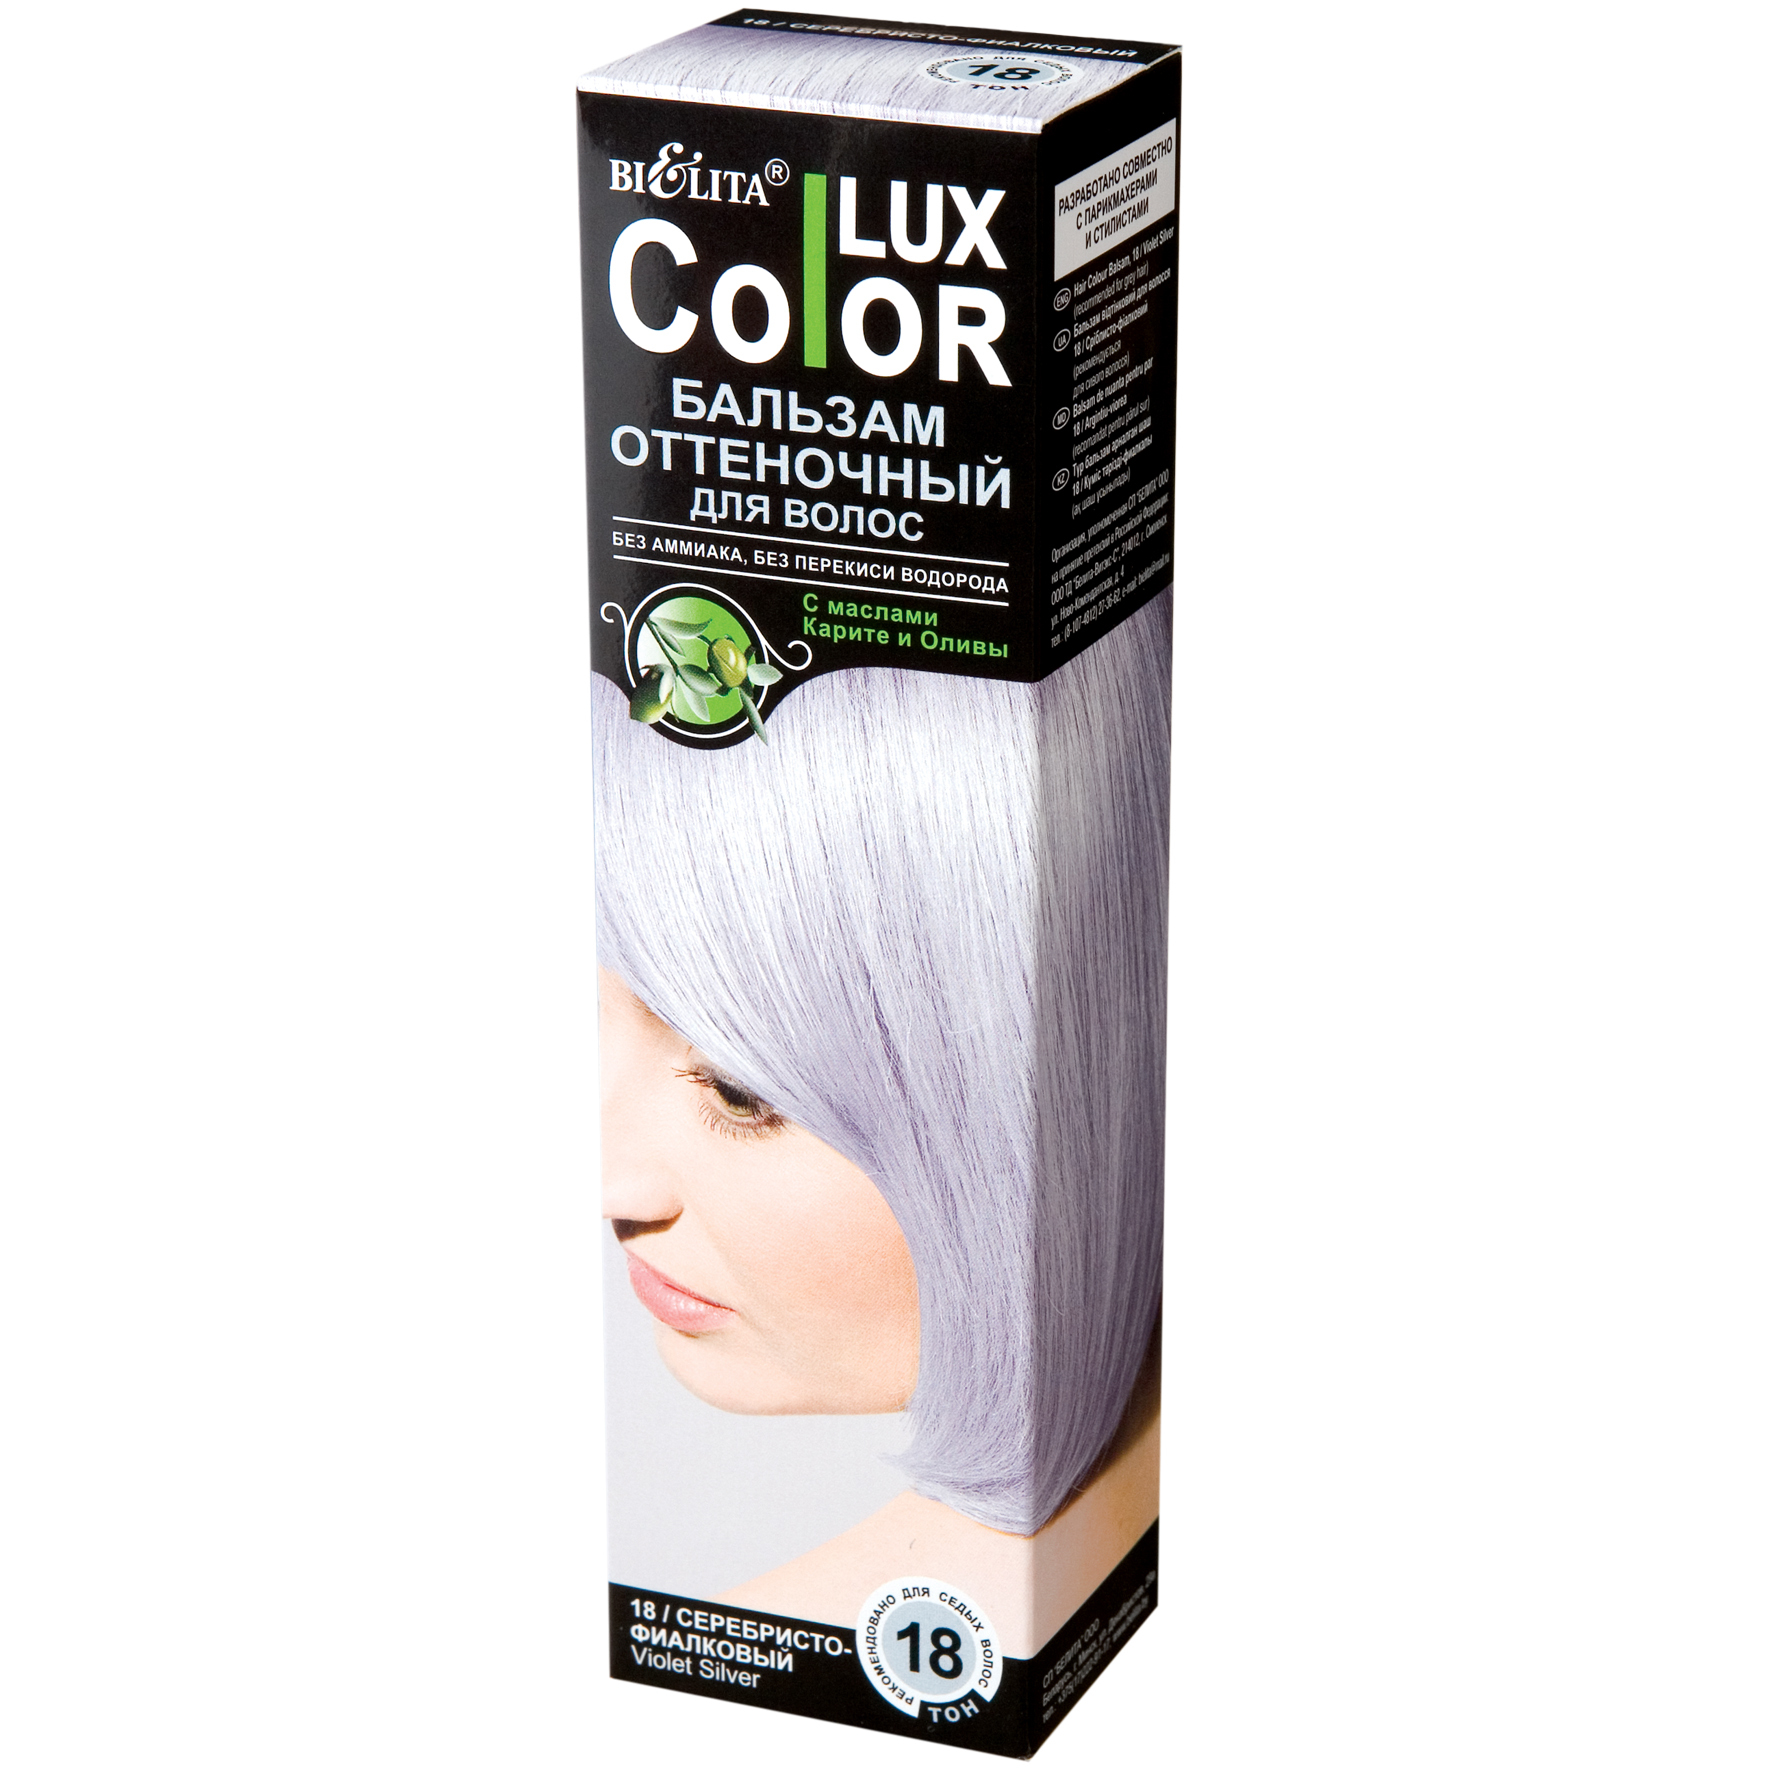 Оттеночный бальзам белита color. Lux Color бальзам оттеночный Color Lux 18. Белита колор Люкс оттеночный бальзам. Оттеночный бальзам для волос "Color Lux" тон: 19 серебристый 100 мл. Bielita Color Lux бальзам оттеночный.